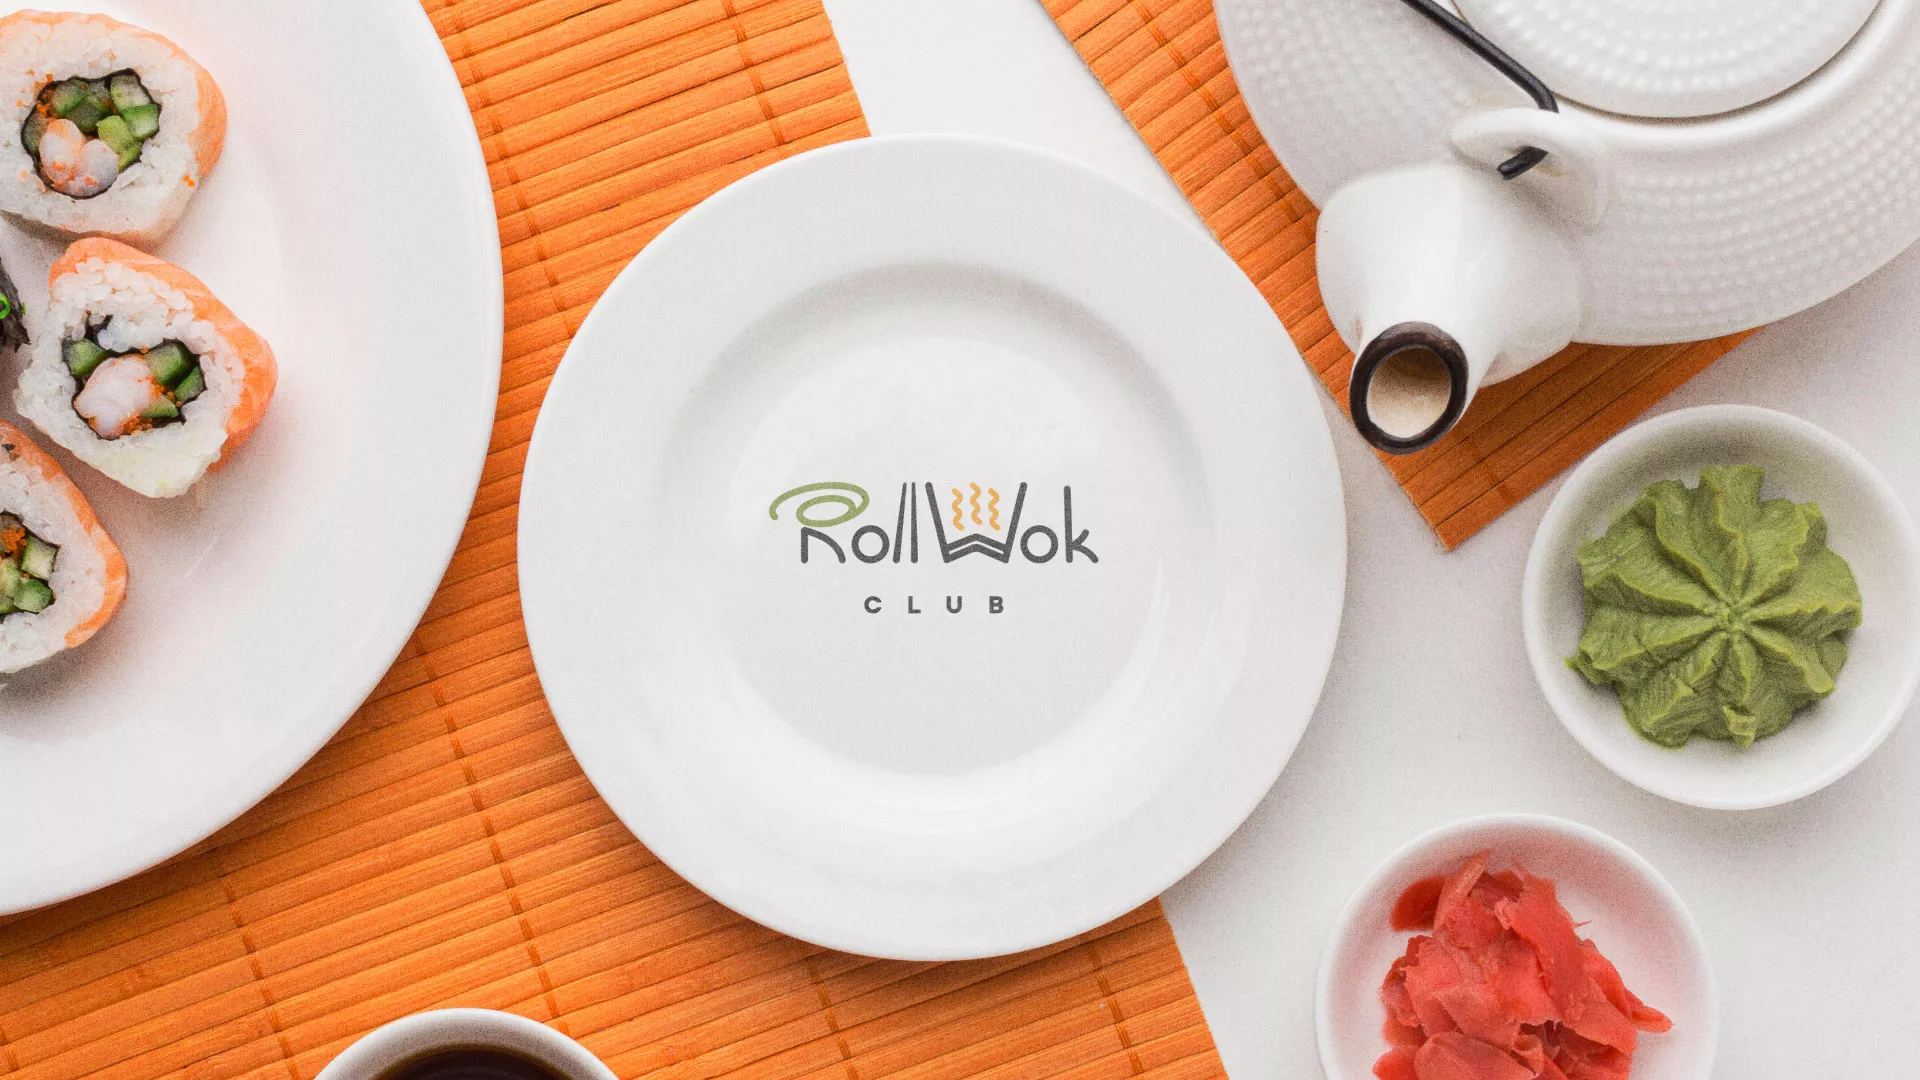 Разработка логотипа и фирменного стиля суши-бара «Roll Wok Club» в Новоульяновске